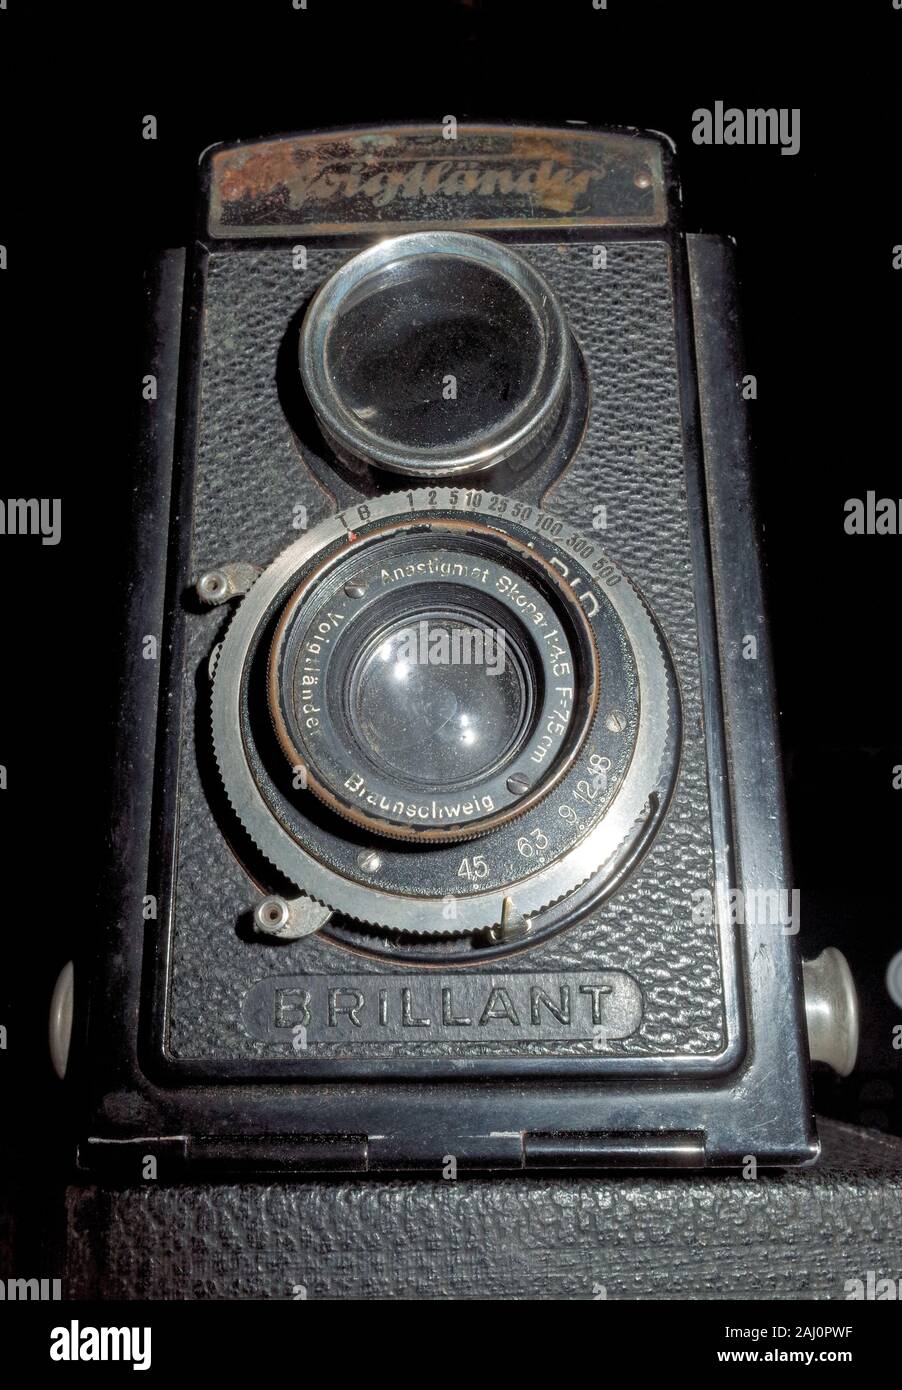 Voigtlander Brillant, vintage camera made in Germany 1932 Stock Photo